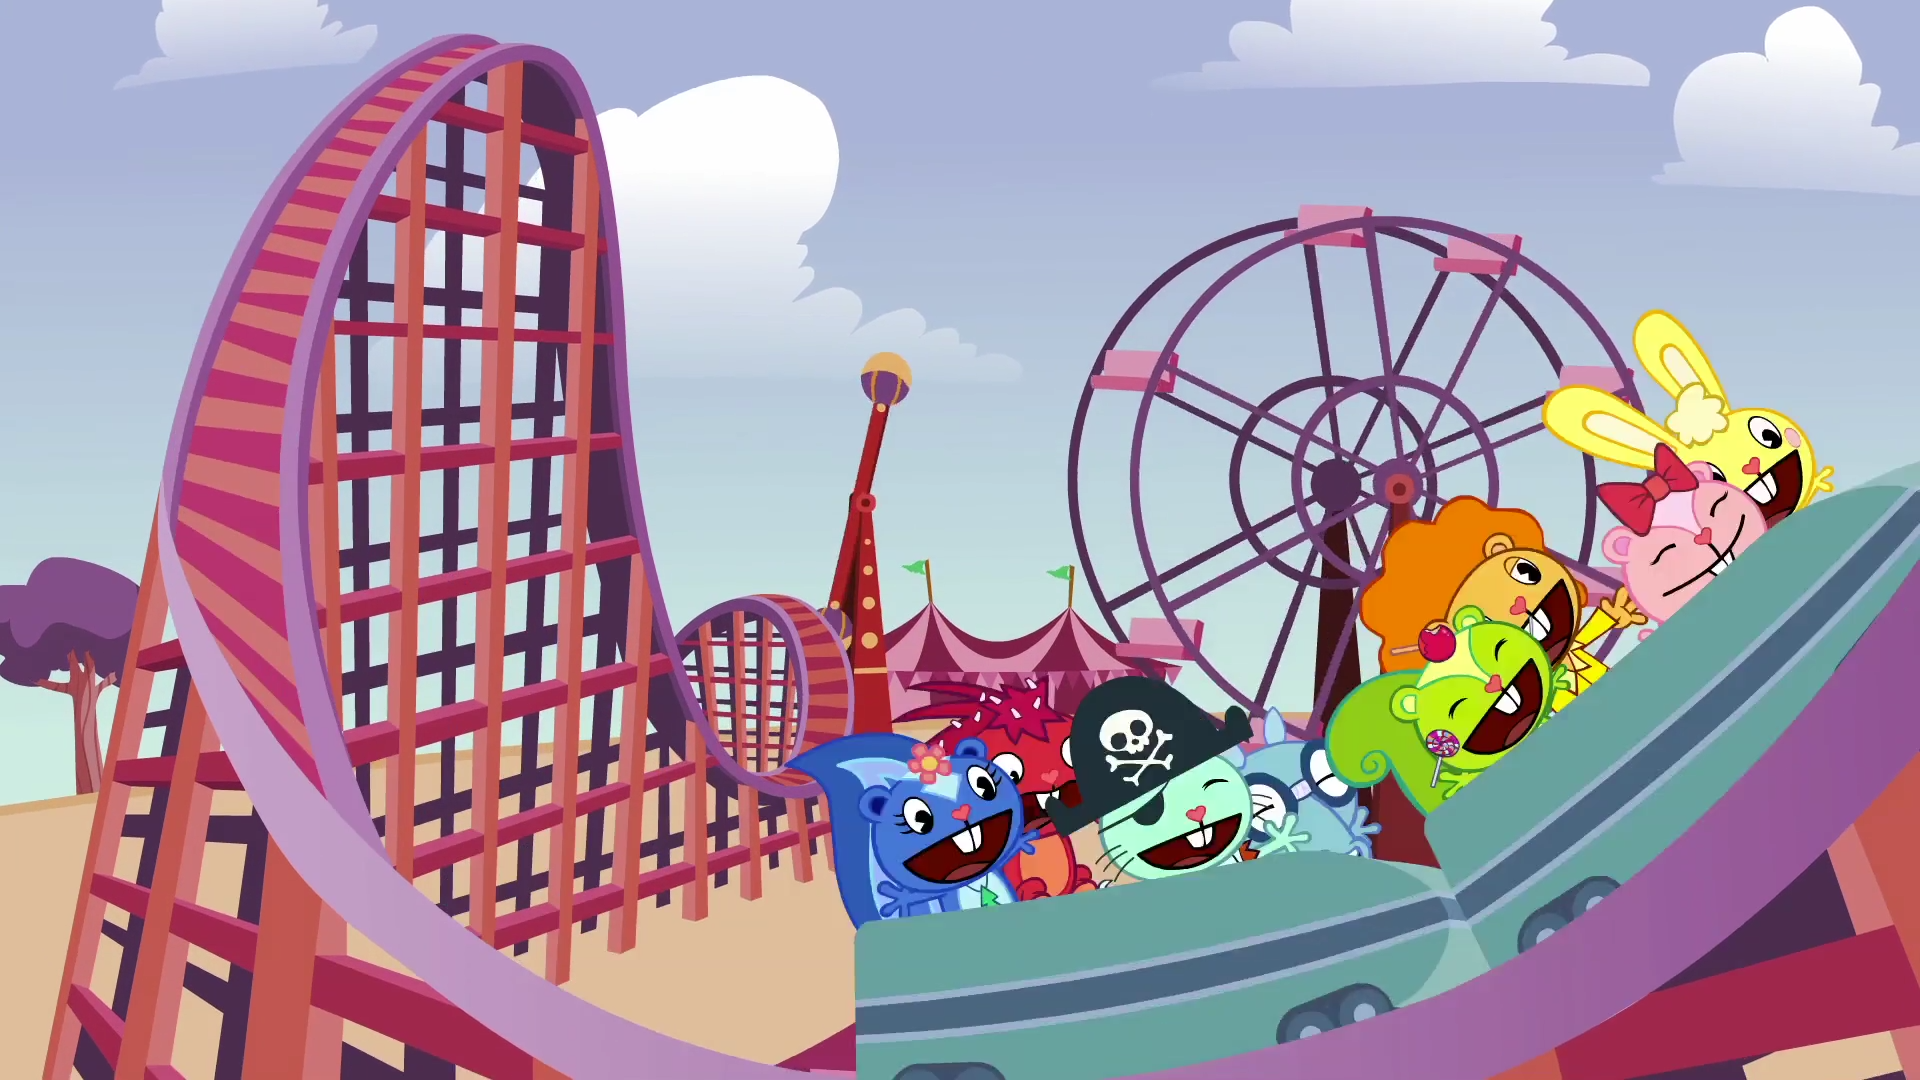 VR Thrills: Roller Coaster 36